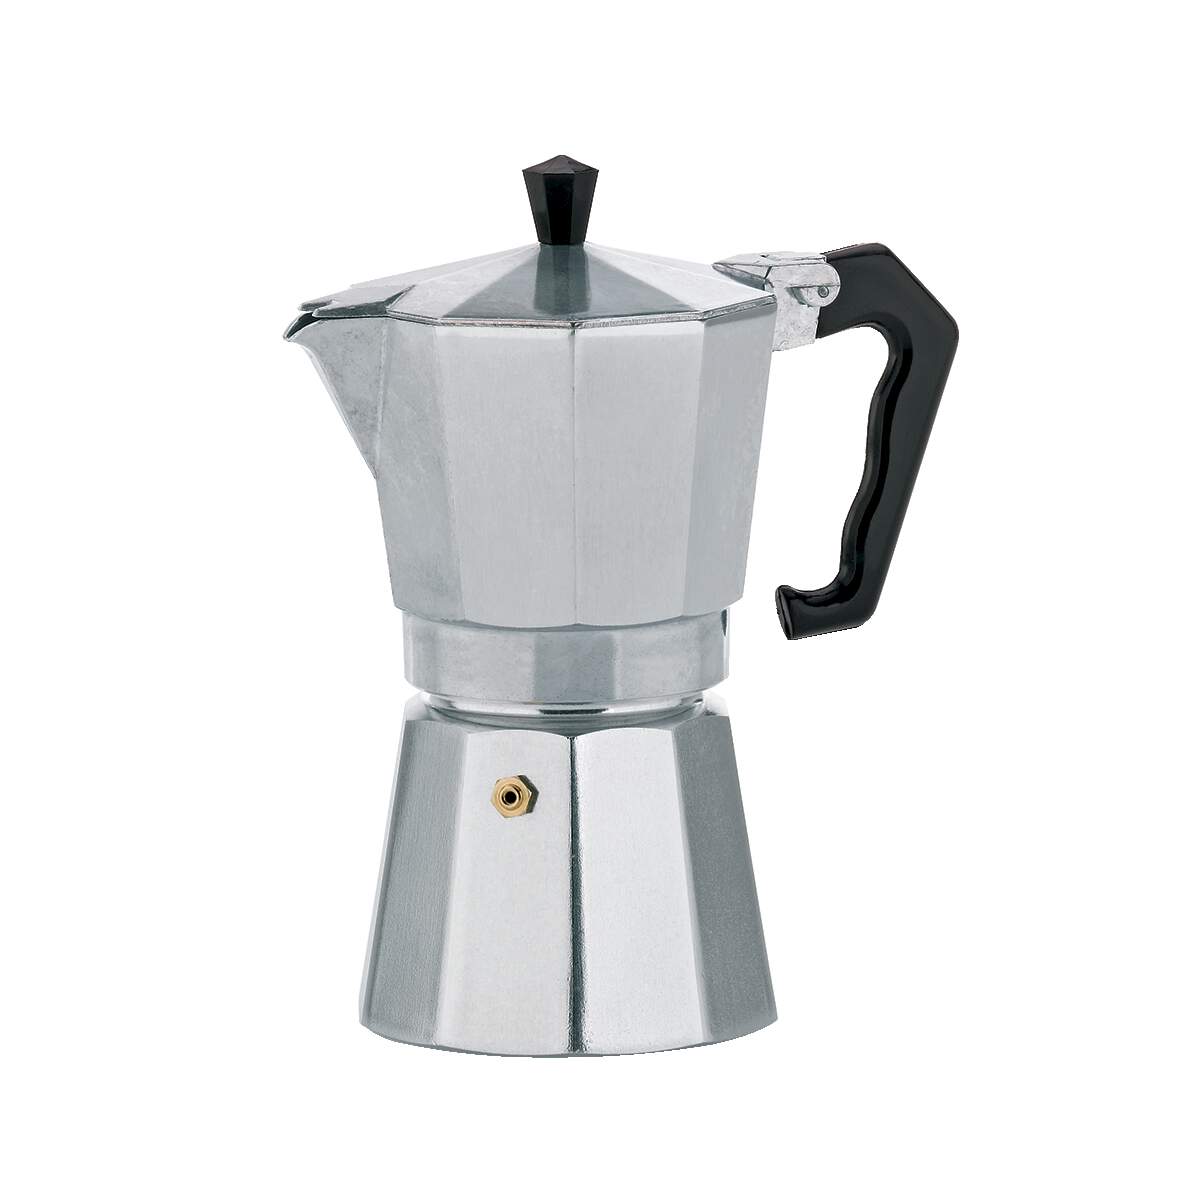 1232177 - Espressokocher Italia 9TA Alu 450ml